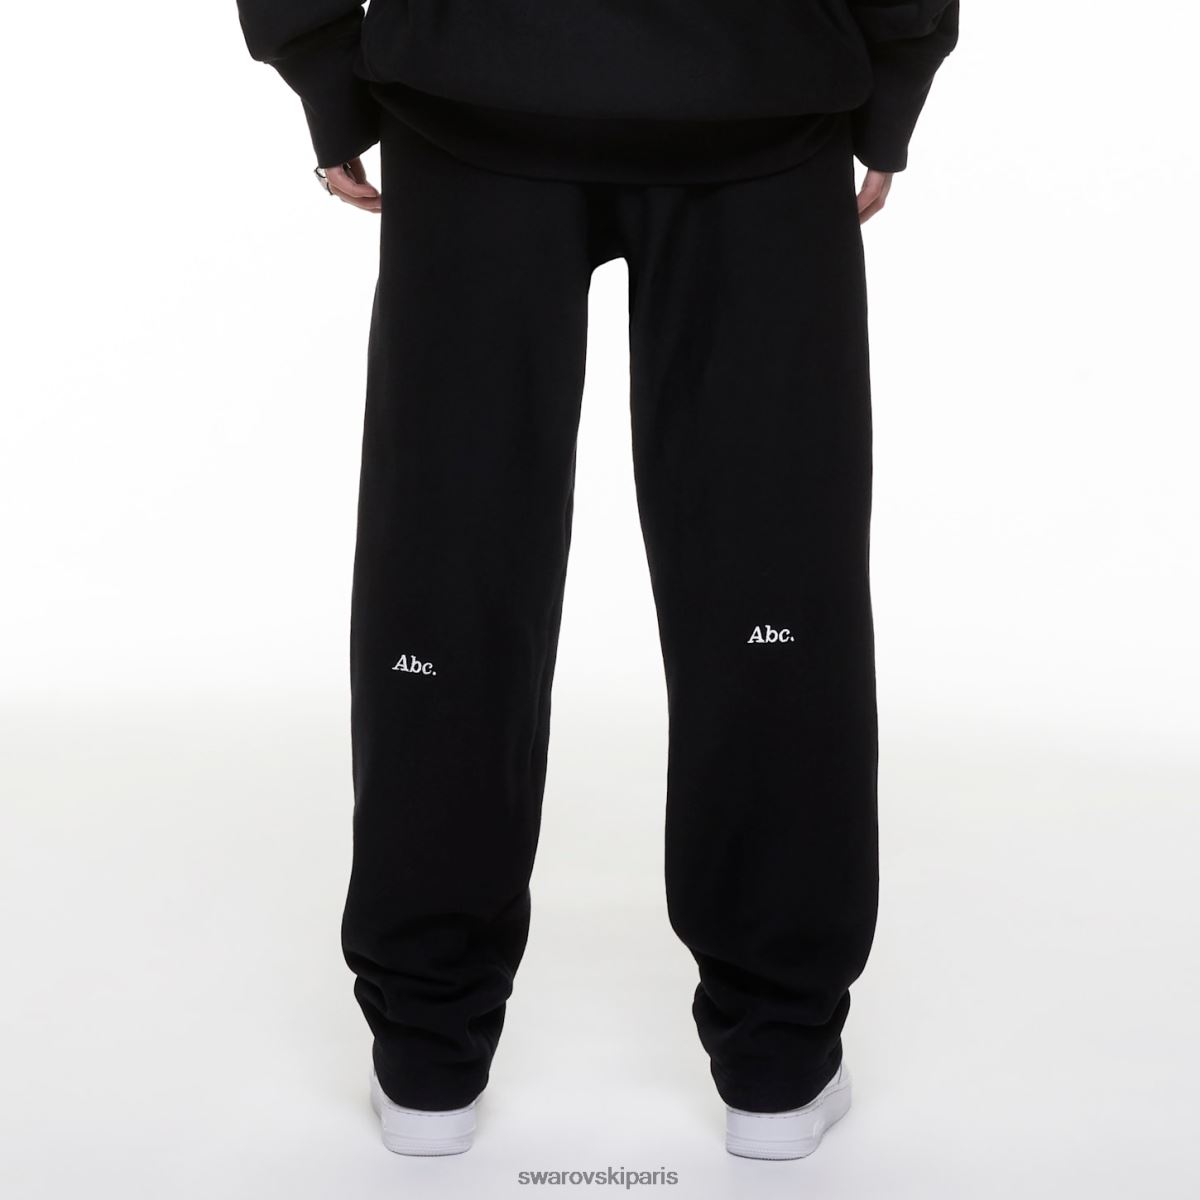 les pantalons de survêtement Swarovski pantalons de survêtement d'objets incolores éblouissants noir RZD0XJ1502